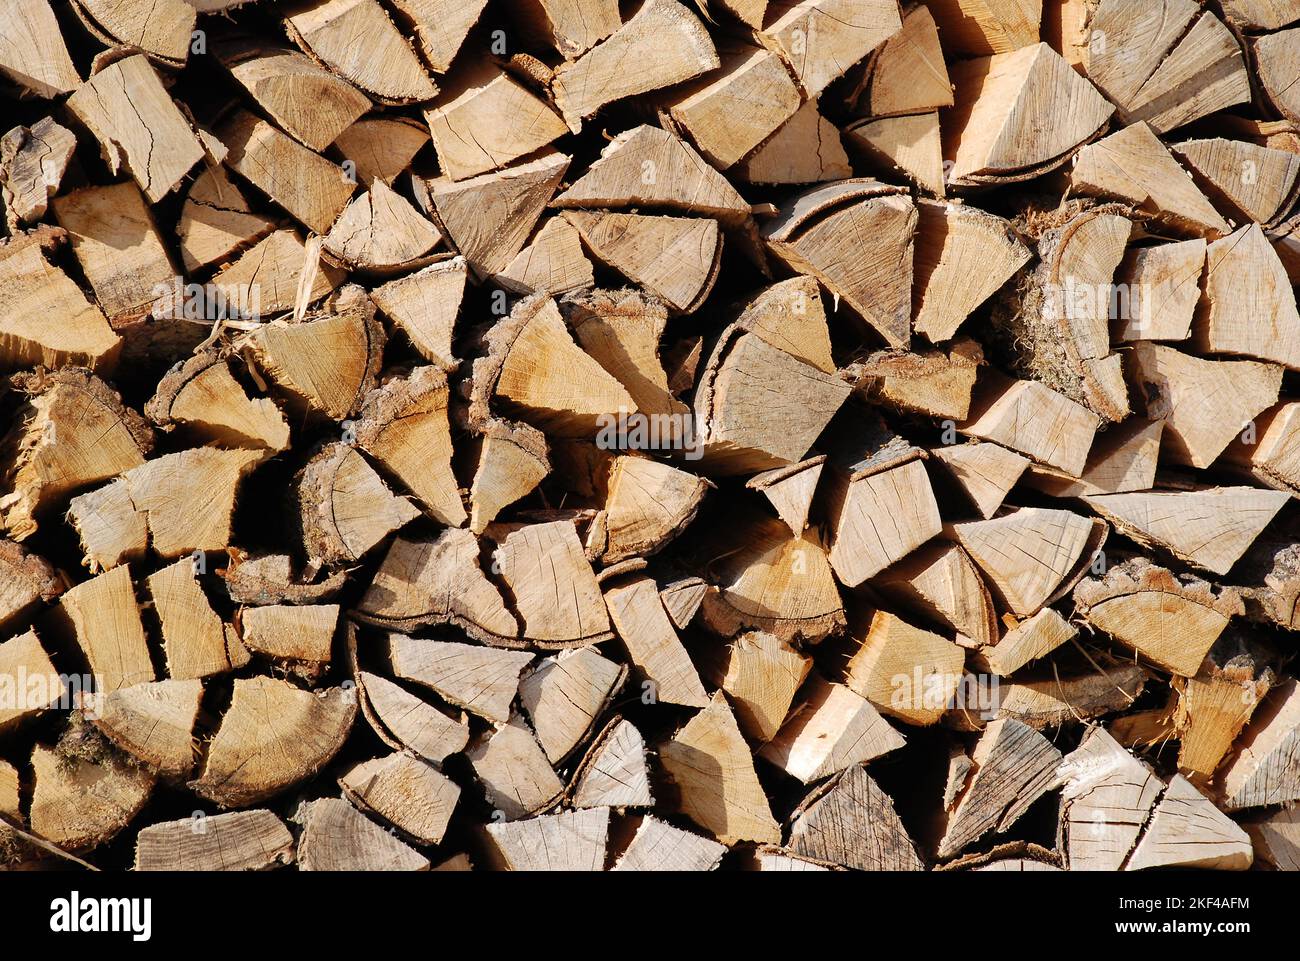 Gestapeltes Brennholz, Kaminholz, Vorrat für den Winter bei steigenden Energiepreisen, Kaminfeuer, Stock Photo